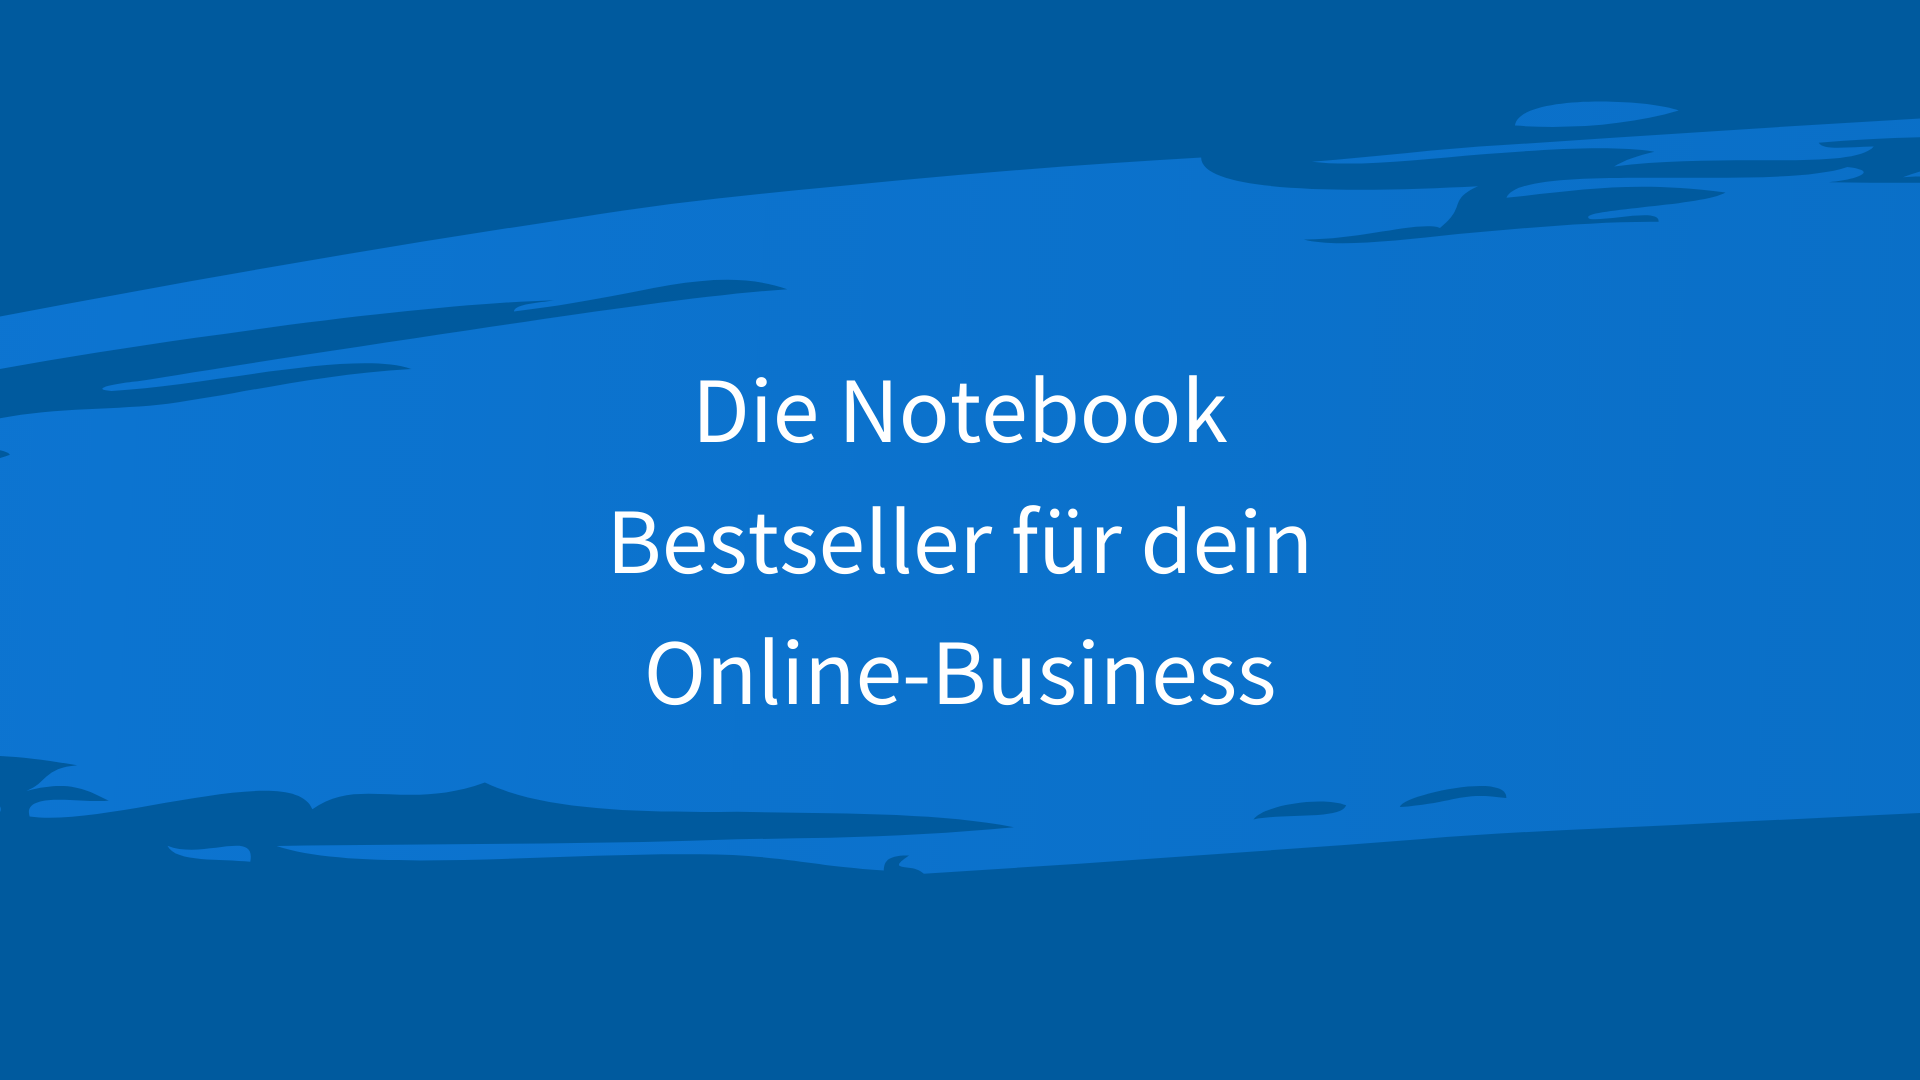 Die Notebook Bestseller für dein Online-Business. Die besten Geräte und Bestseller für Selbstständige, Freelancer und alle, die sich ein erfolgreiches Business aufbauen.